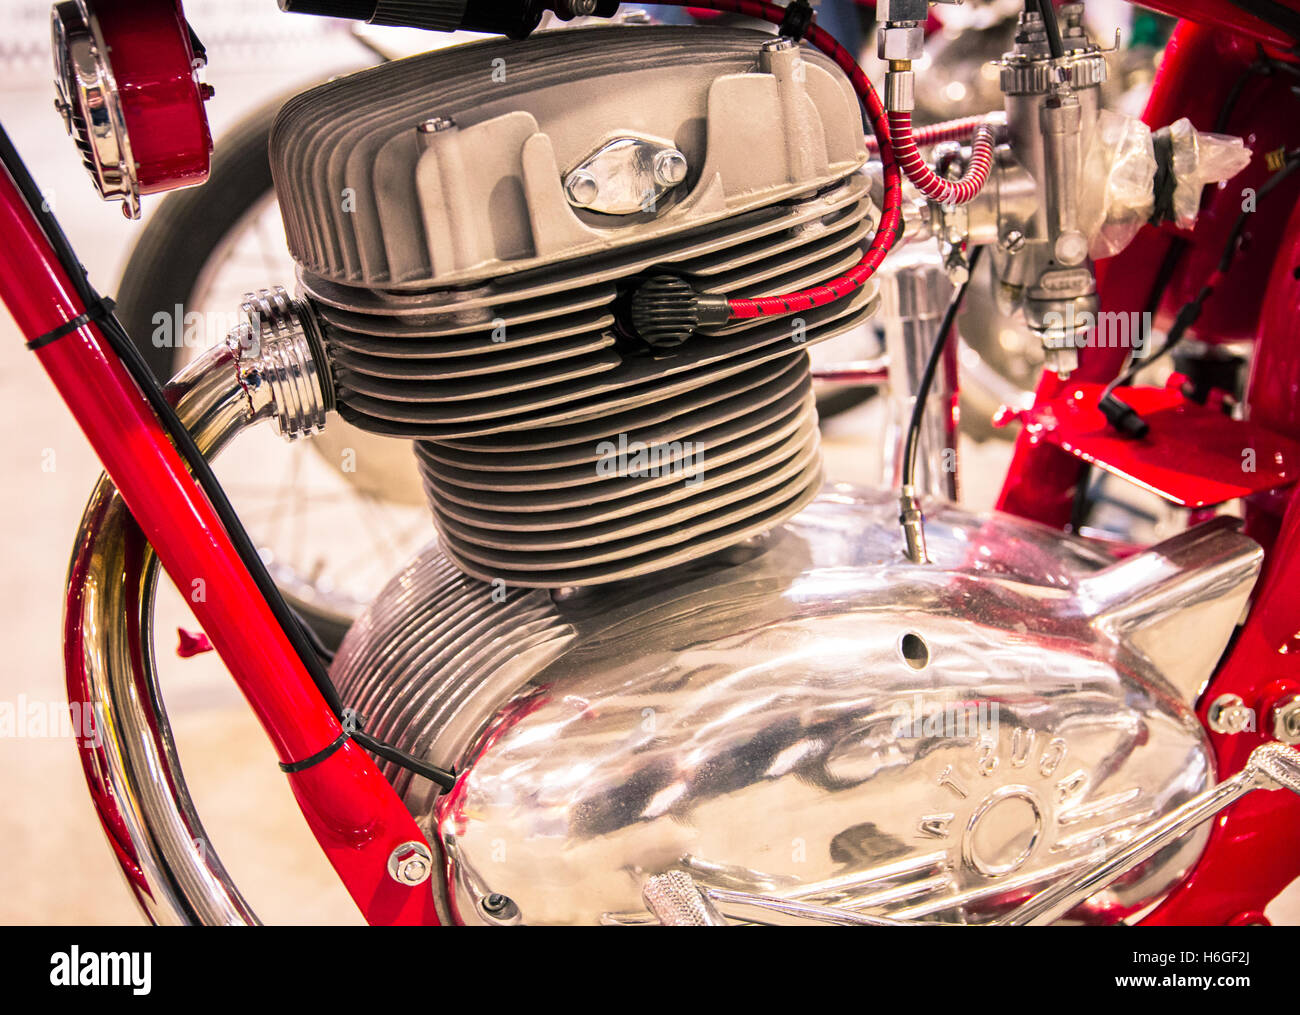 Verona, Italia - 9 Maggio 2015: dettaglio della testa del motore di un rosso moto d'epoca. Foto Stock